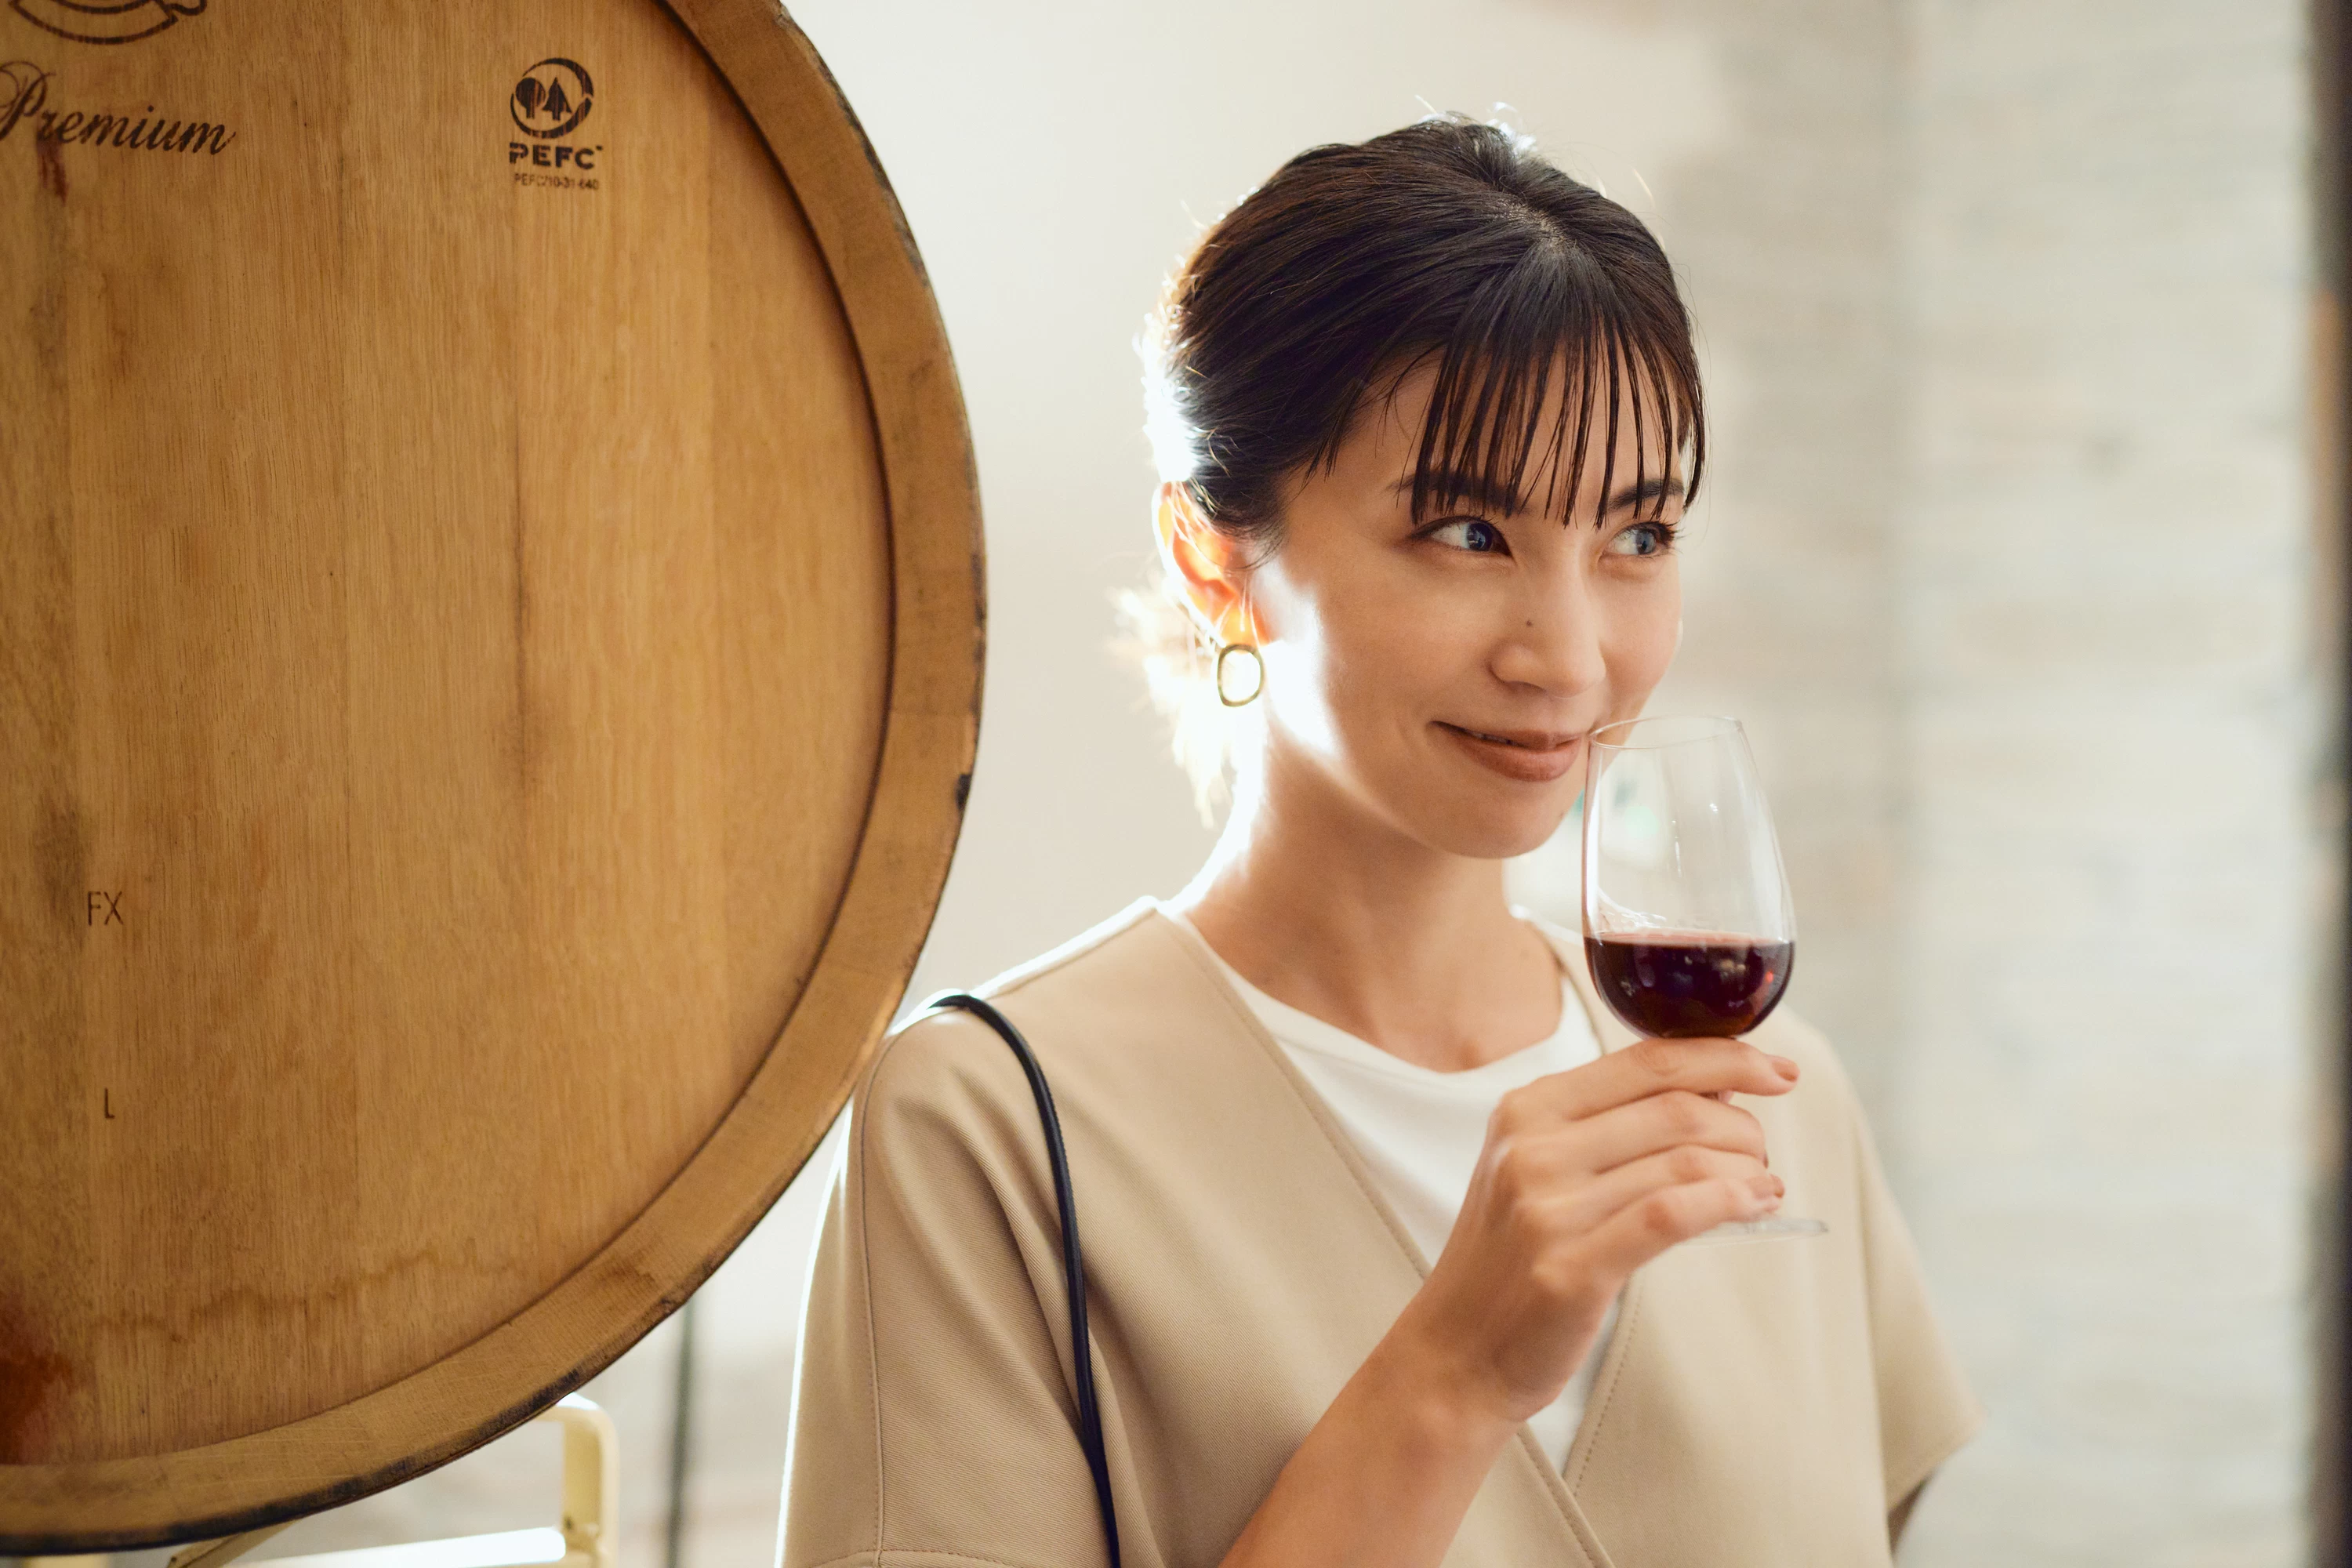 安田美沙子さんが、大阪でワイン⁉「旅色FO-CAL羽曳野市特集」公開